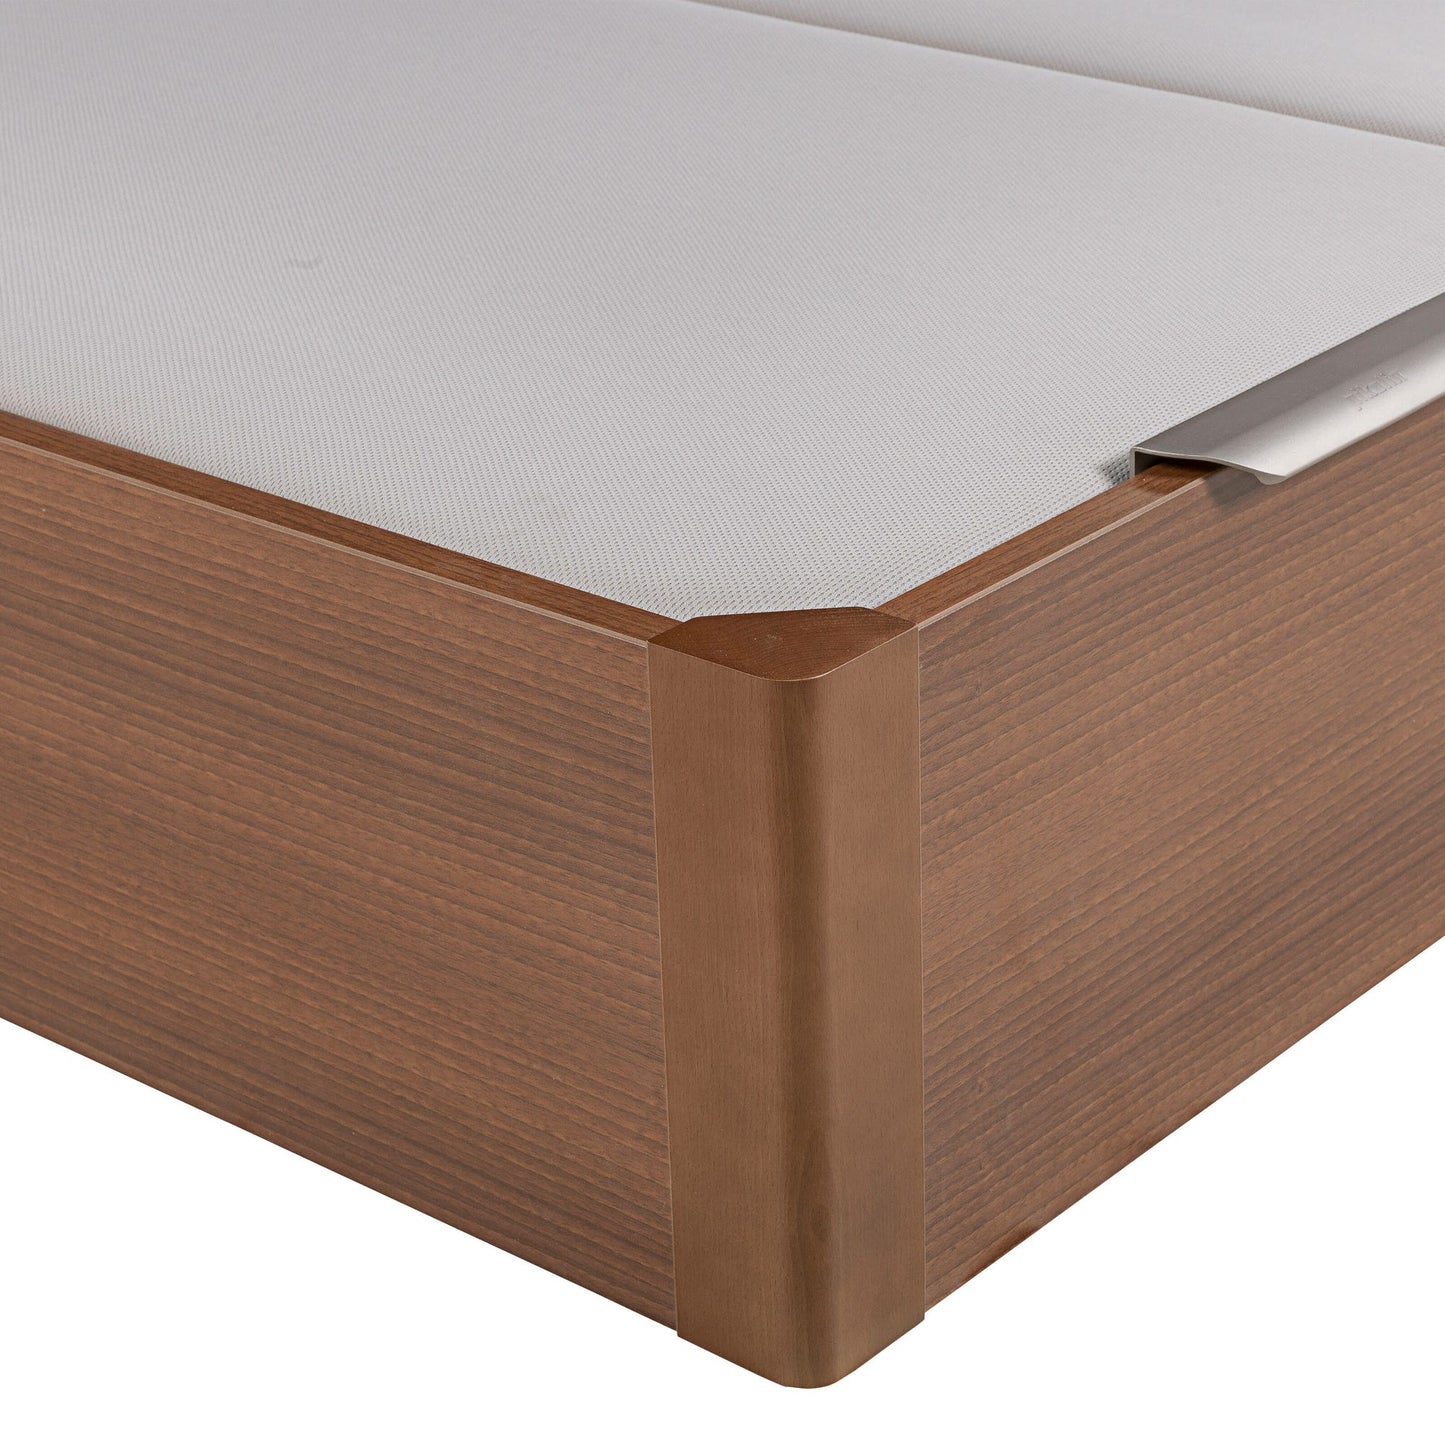 Canapé abatible de madera de tapa doble de color cerezo - DESIGN - 160x210